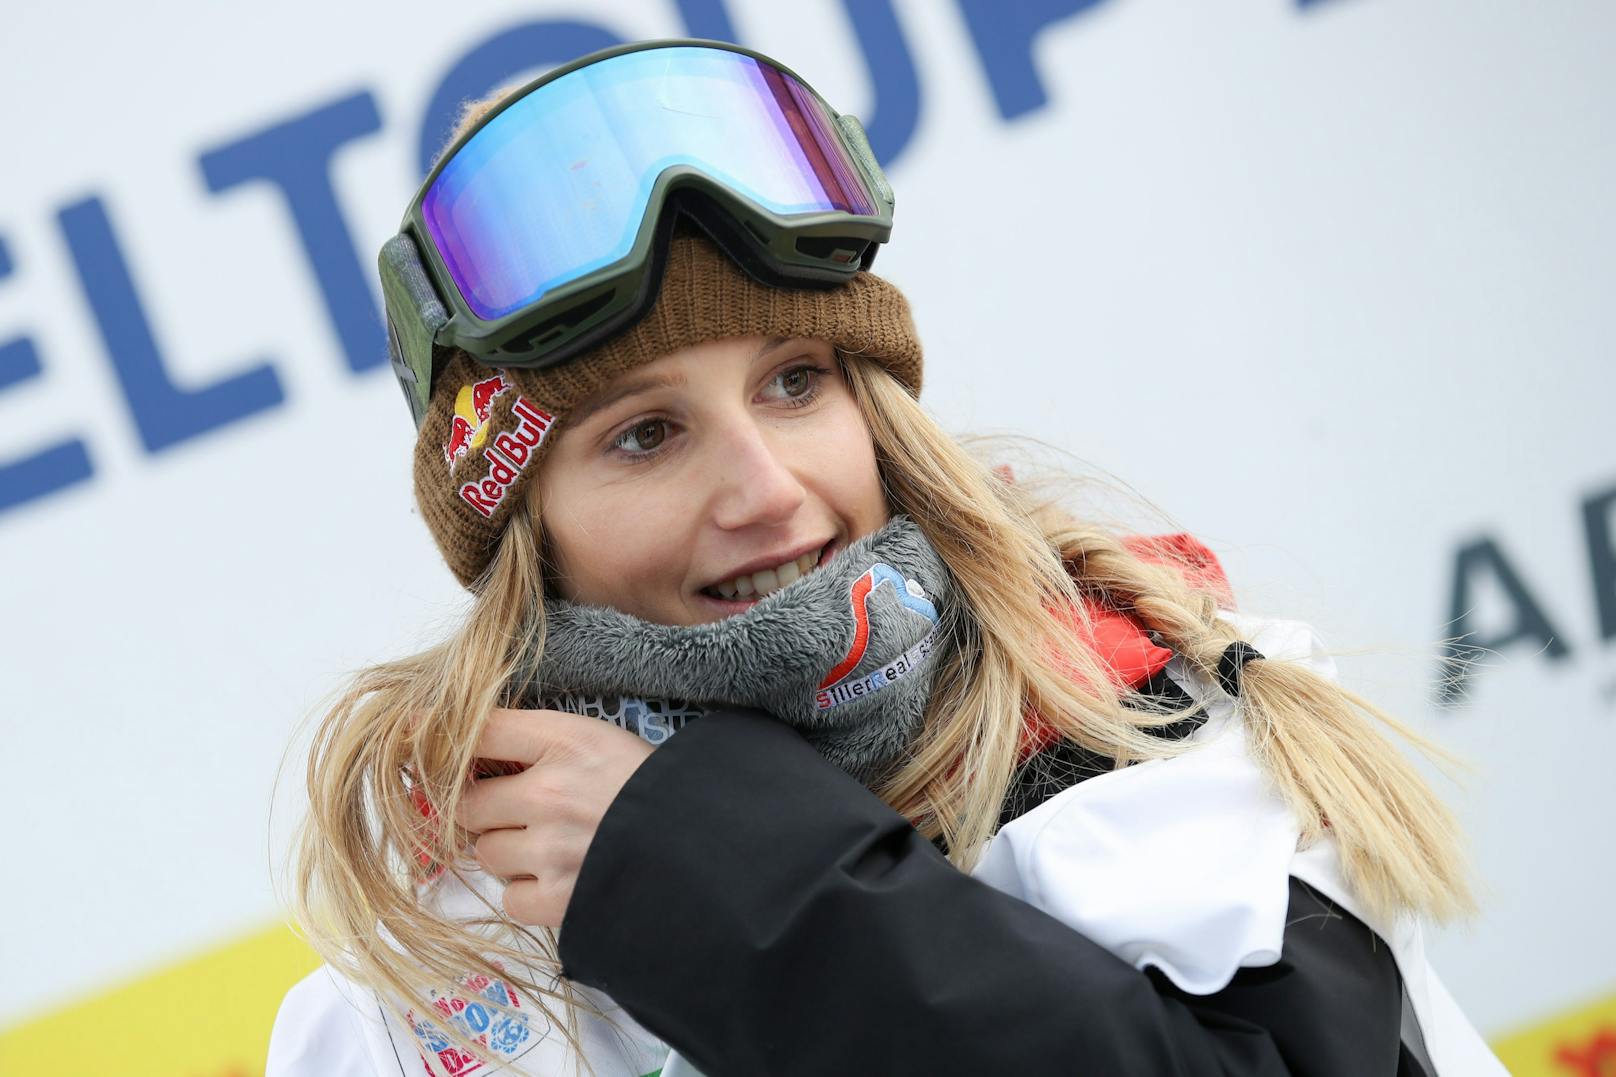 Snowboarderin Anna Gasser gewann zum zweiten Mal den Gesamtweltcup.&nbsp;